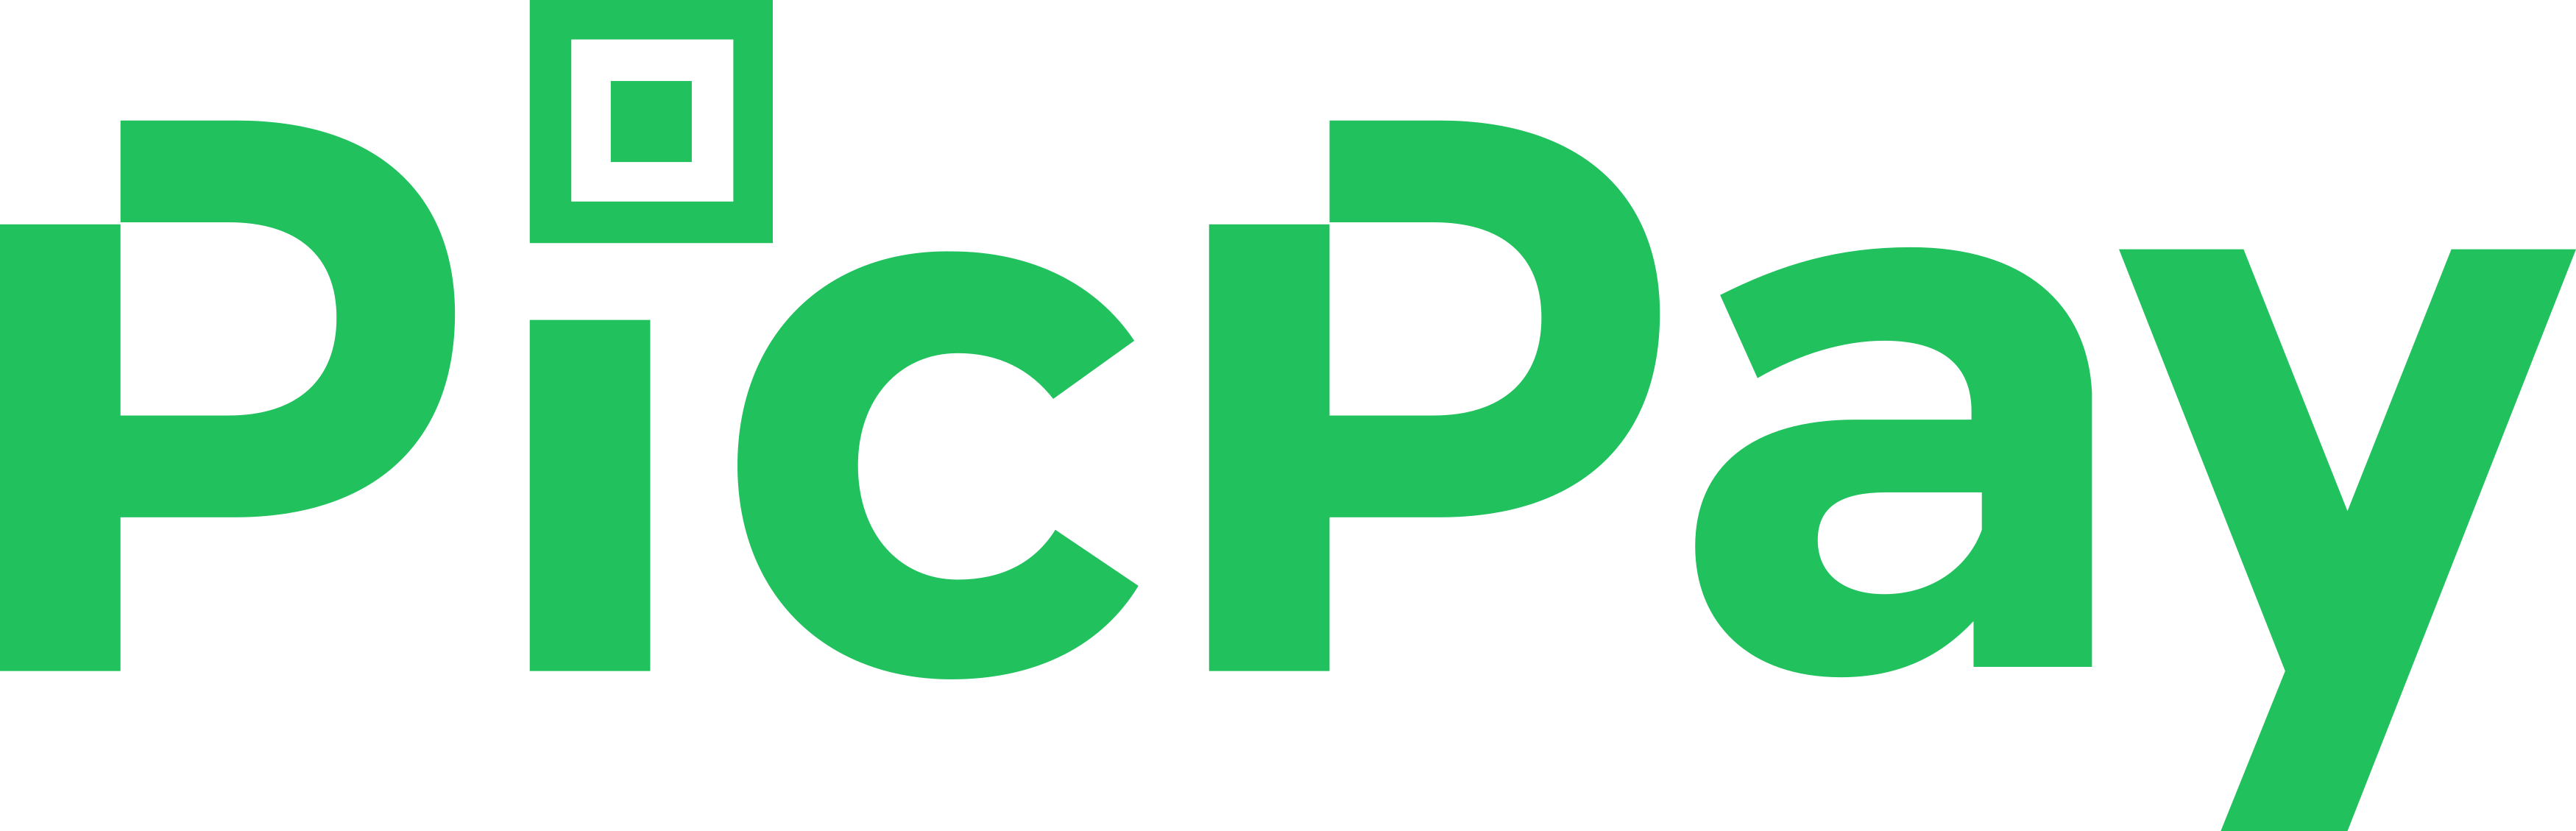 picpay-logo.png